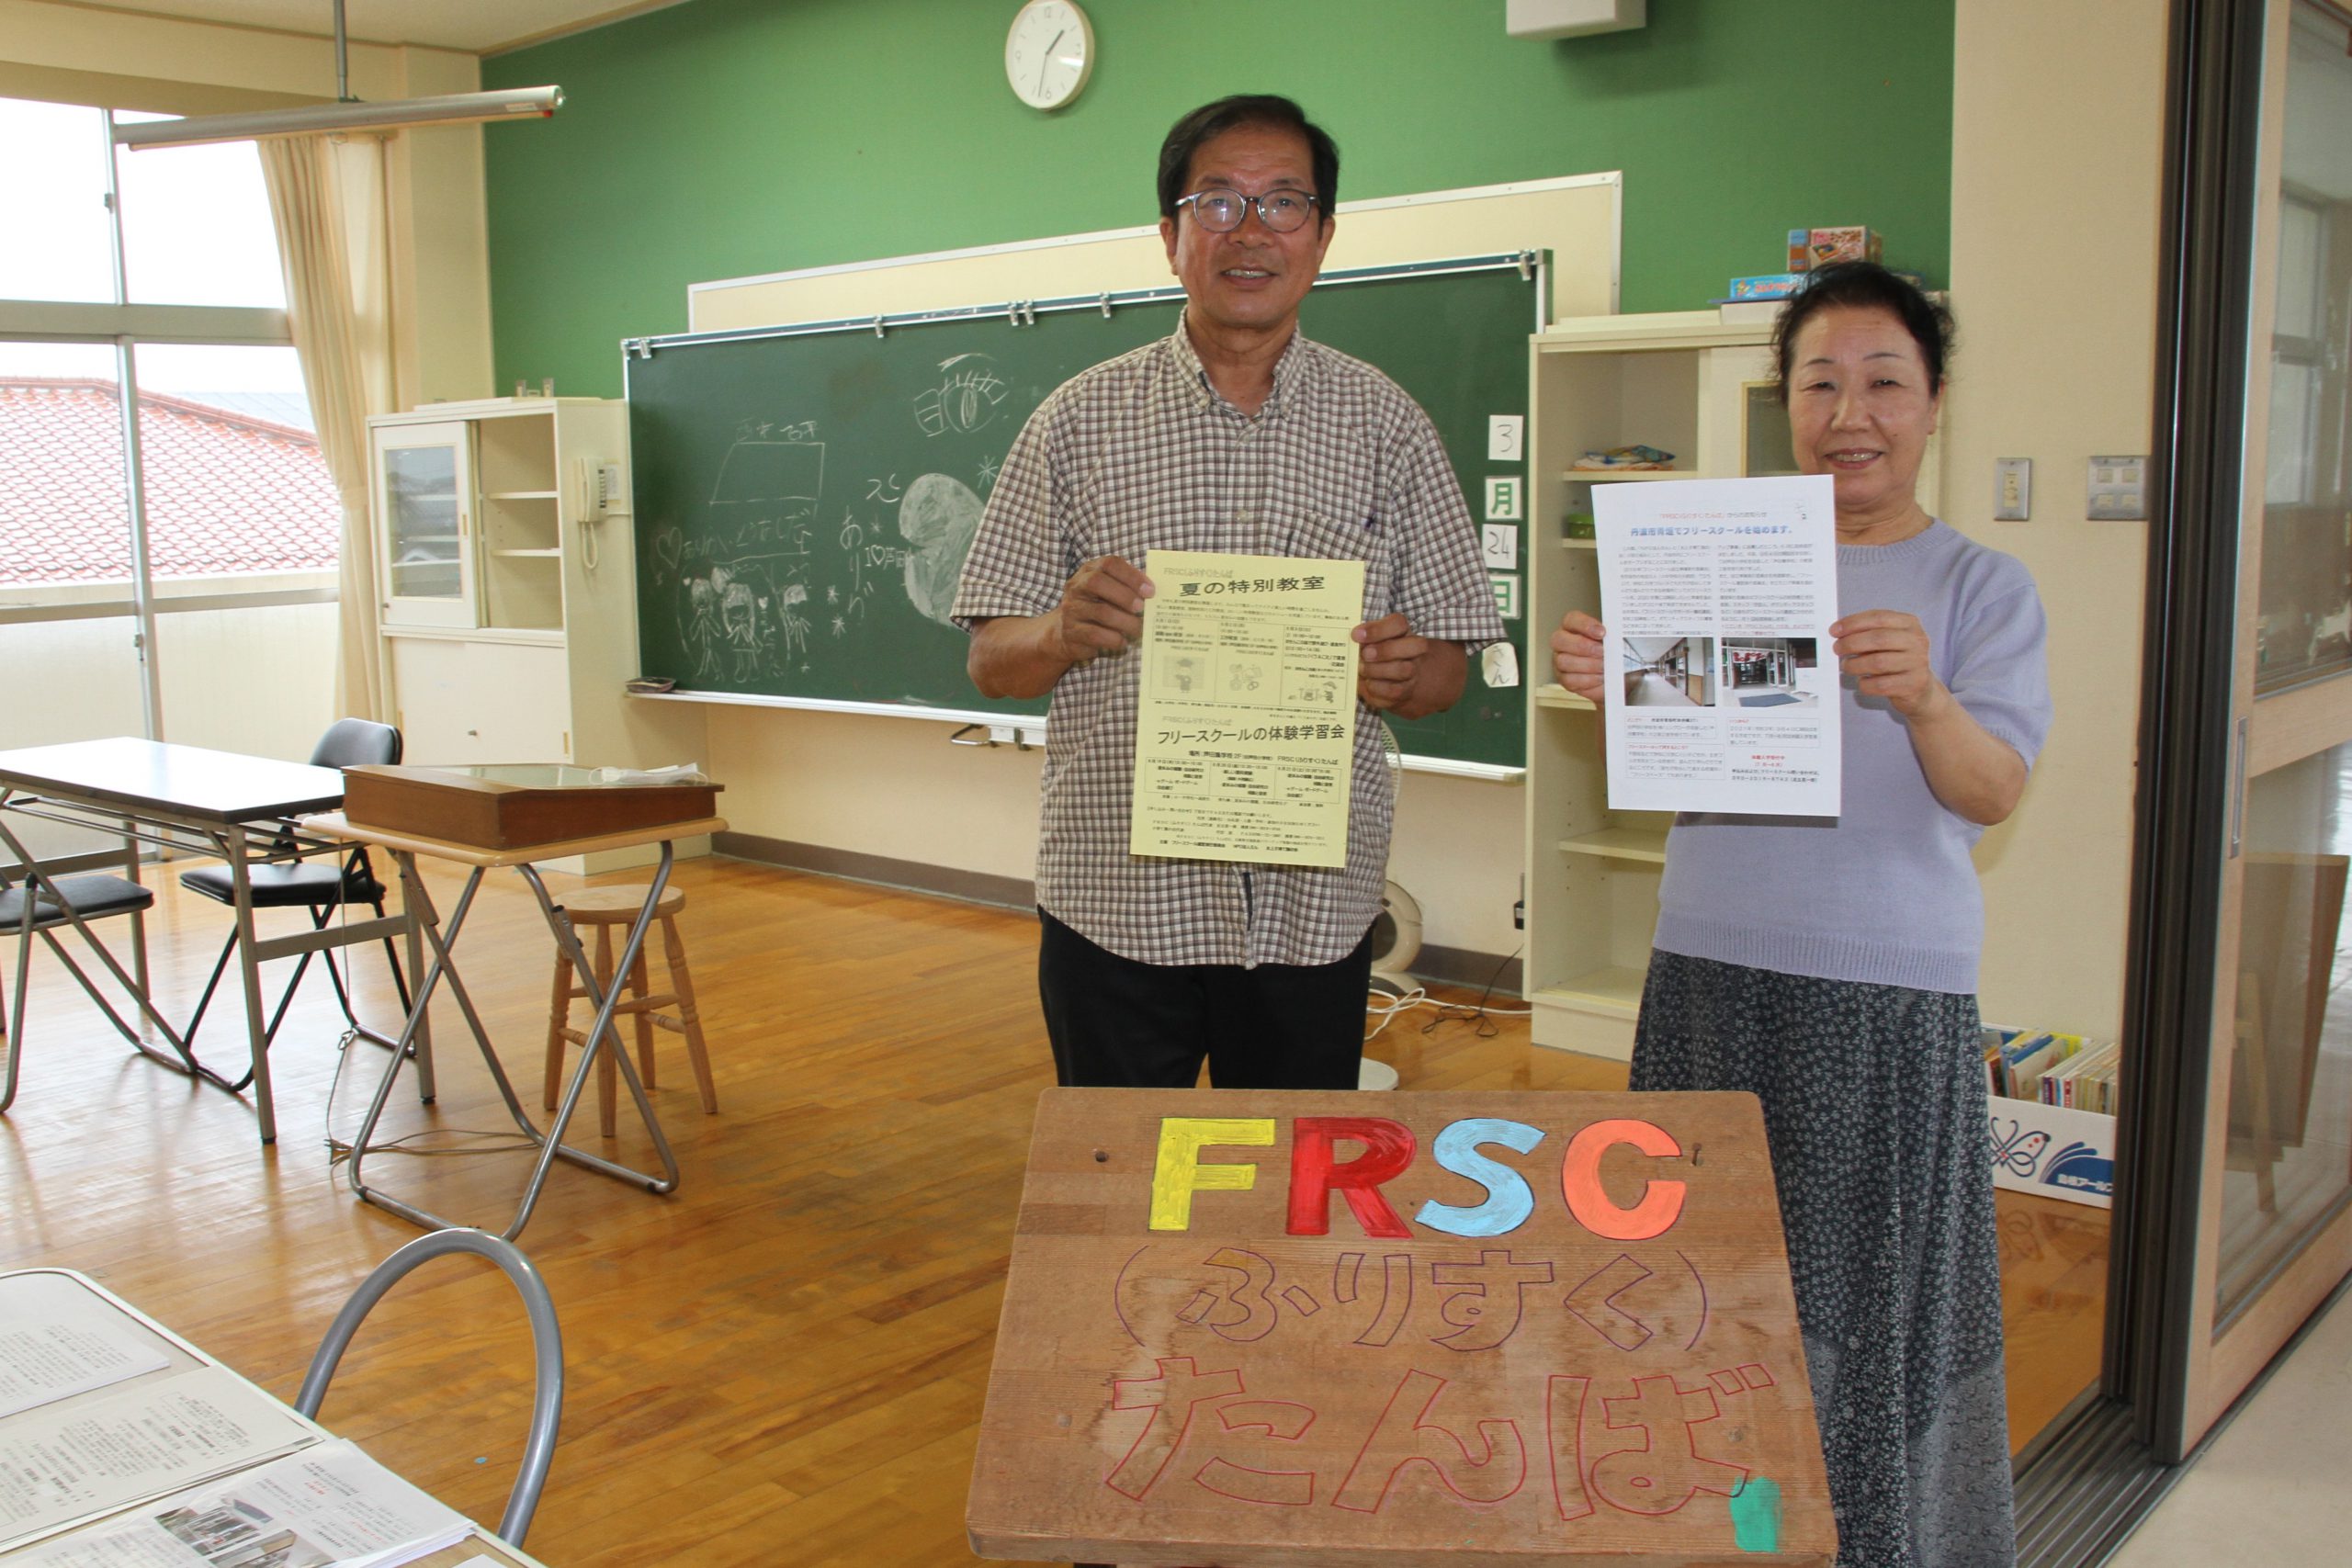 不登校の子の学習を支援 フリースクール9月開設 元教師らが運営 丹波新聞